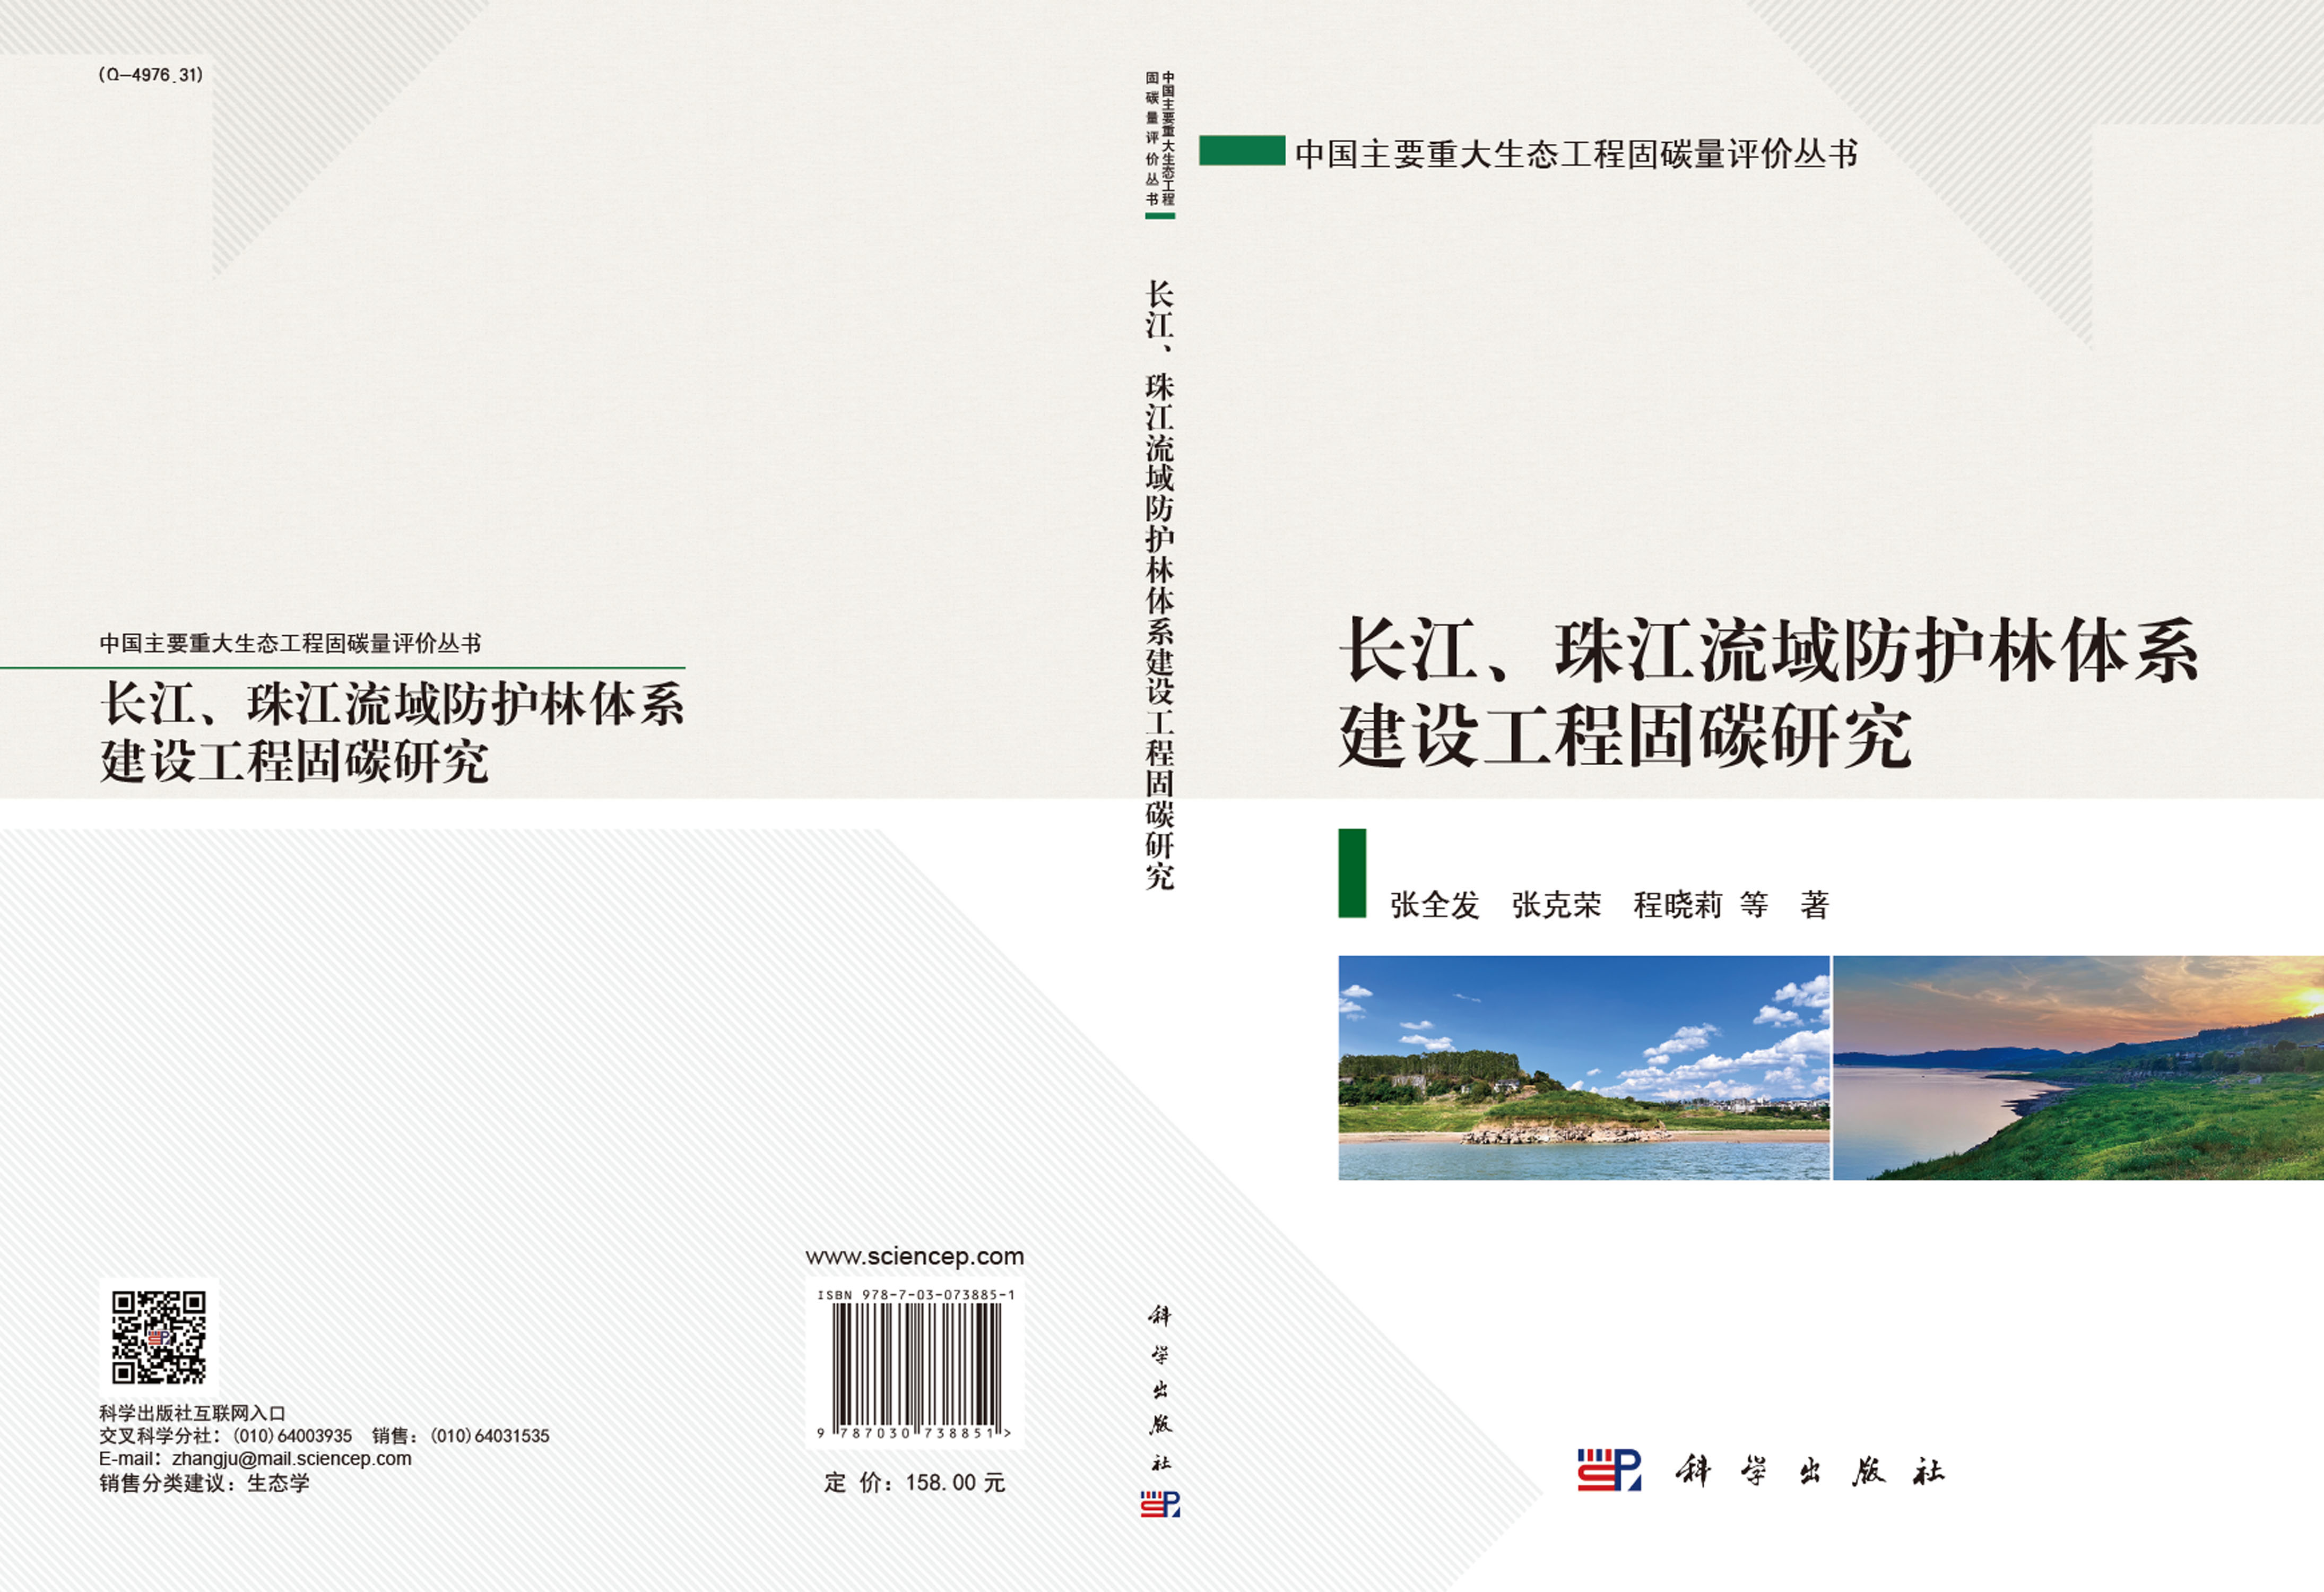 长江、珠江流域防护林体系建设工程固碳研究